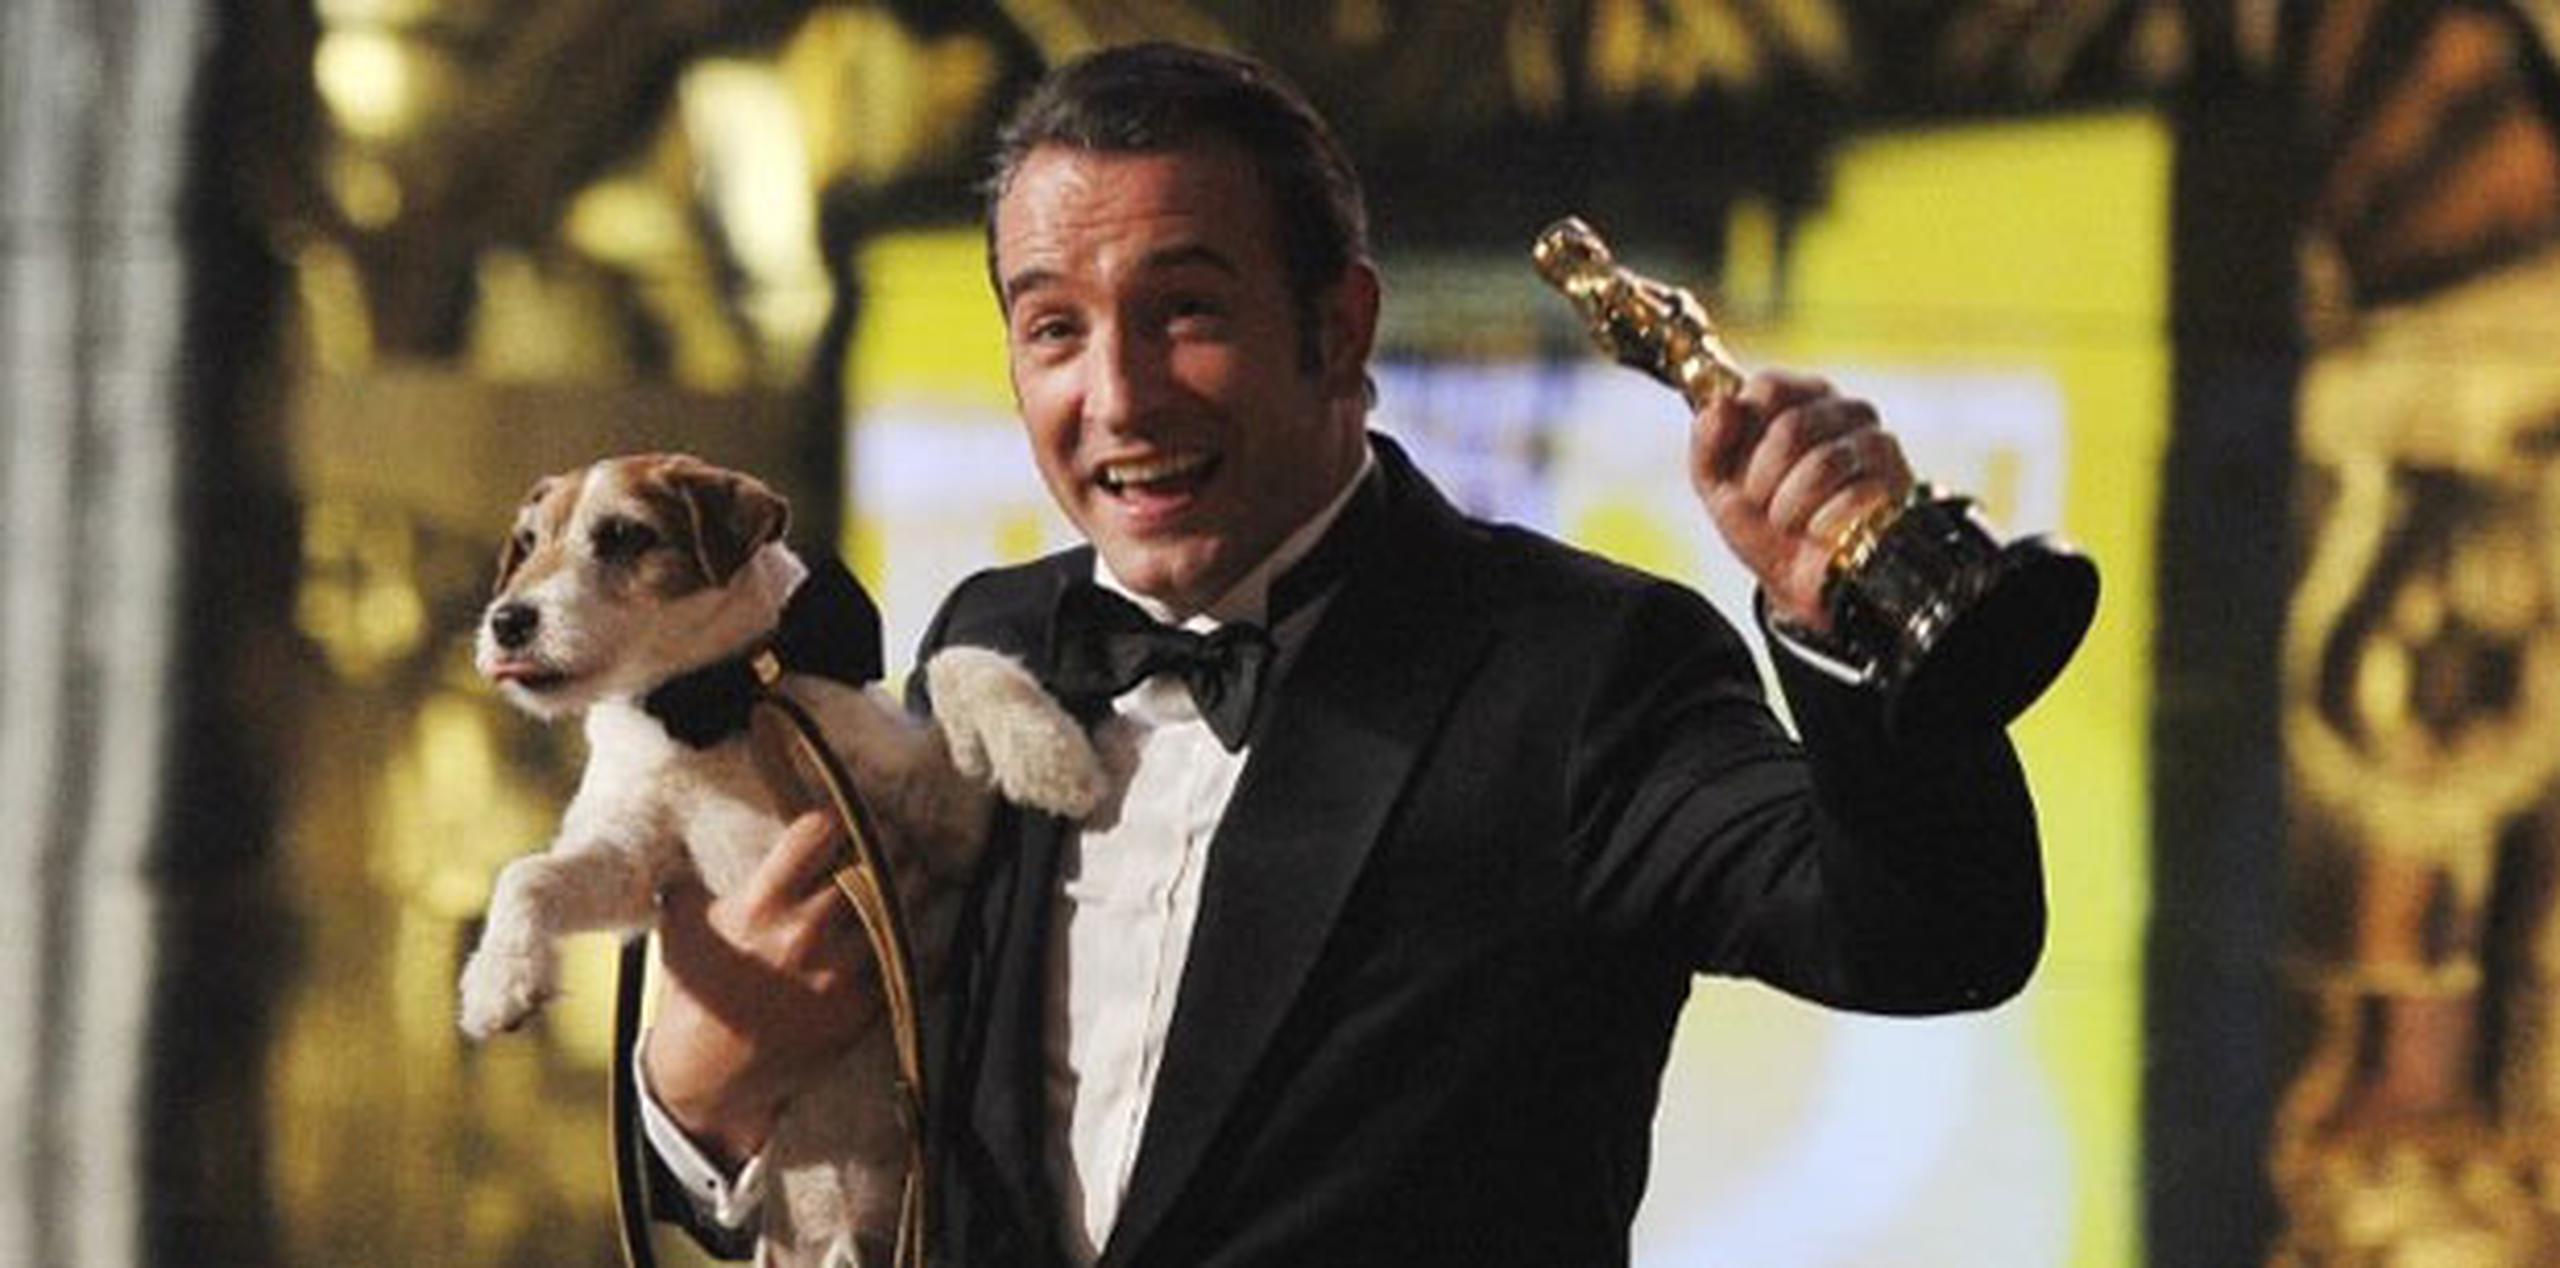 La célebre mascota Uggie, el perro de la película "The Artist" (2011), falleció el 7 de agosto en Los Ángeles. (AFP/ Robyn Beck)